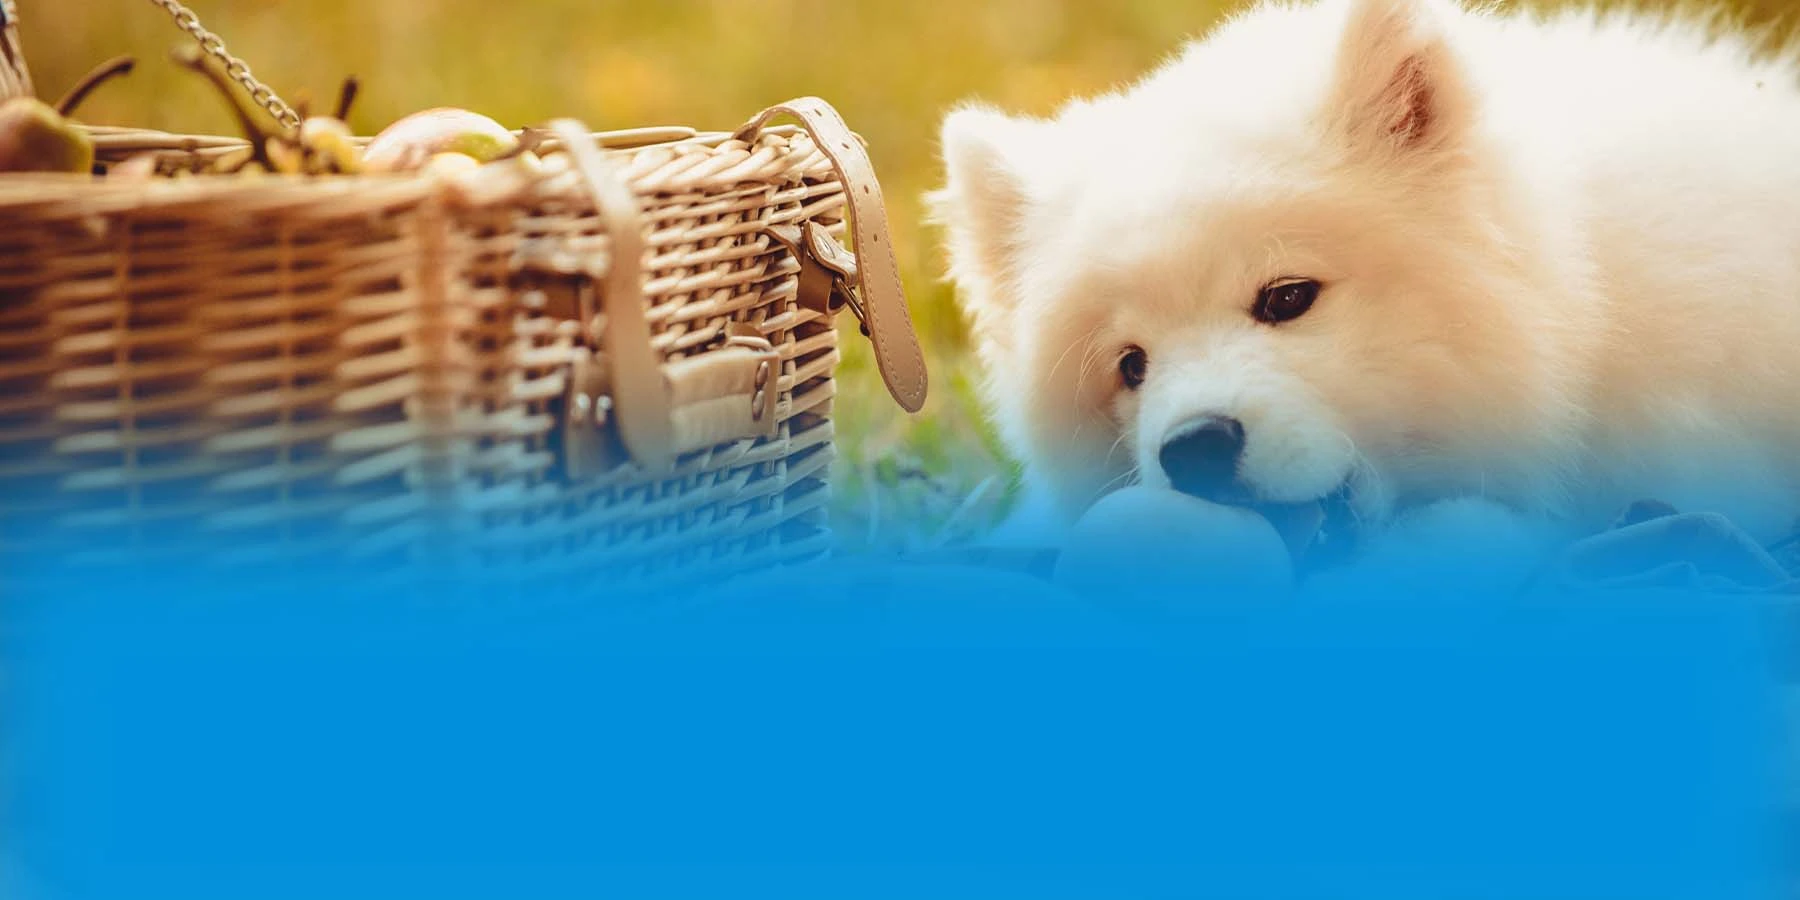 Puppy eating a peach near a picnic basket.